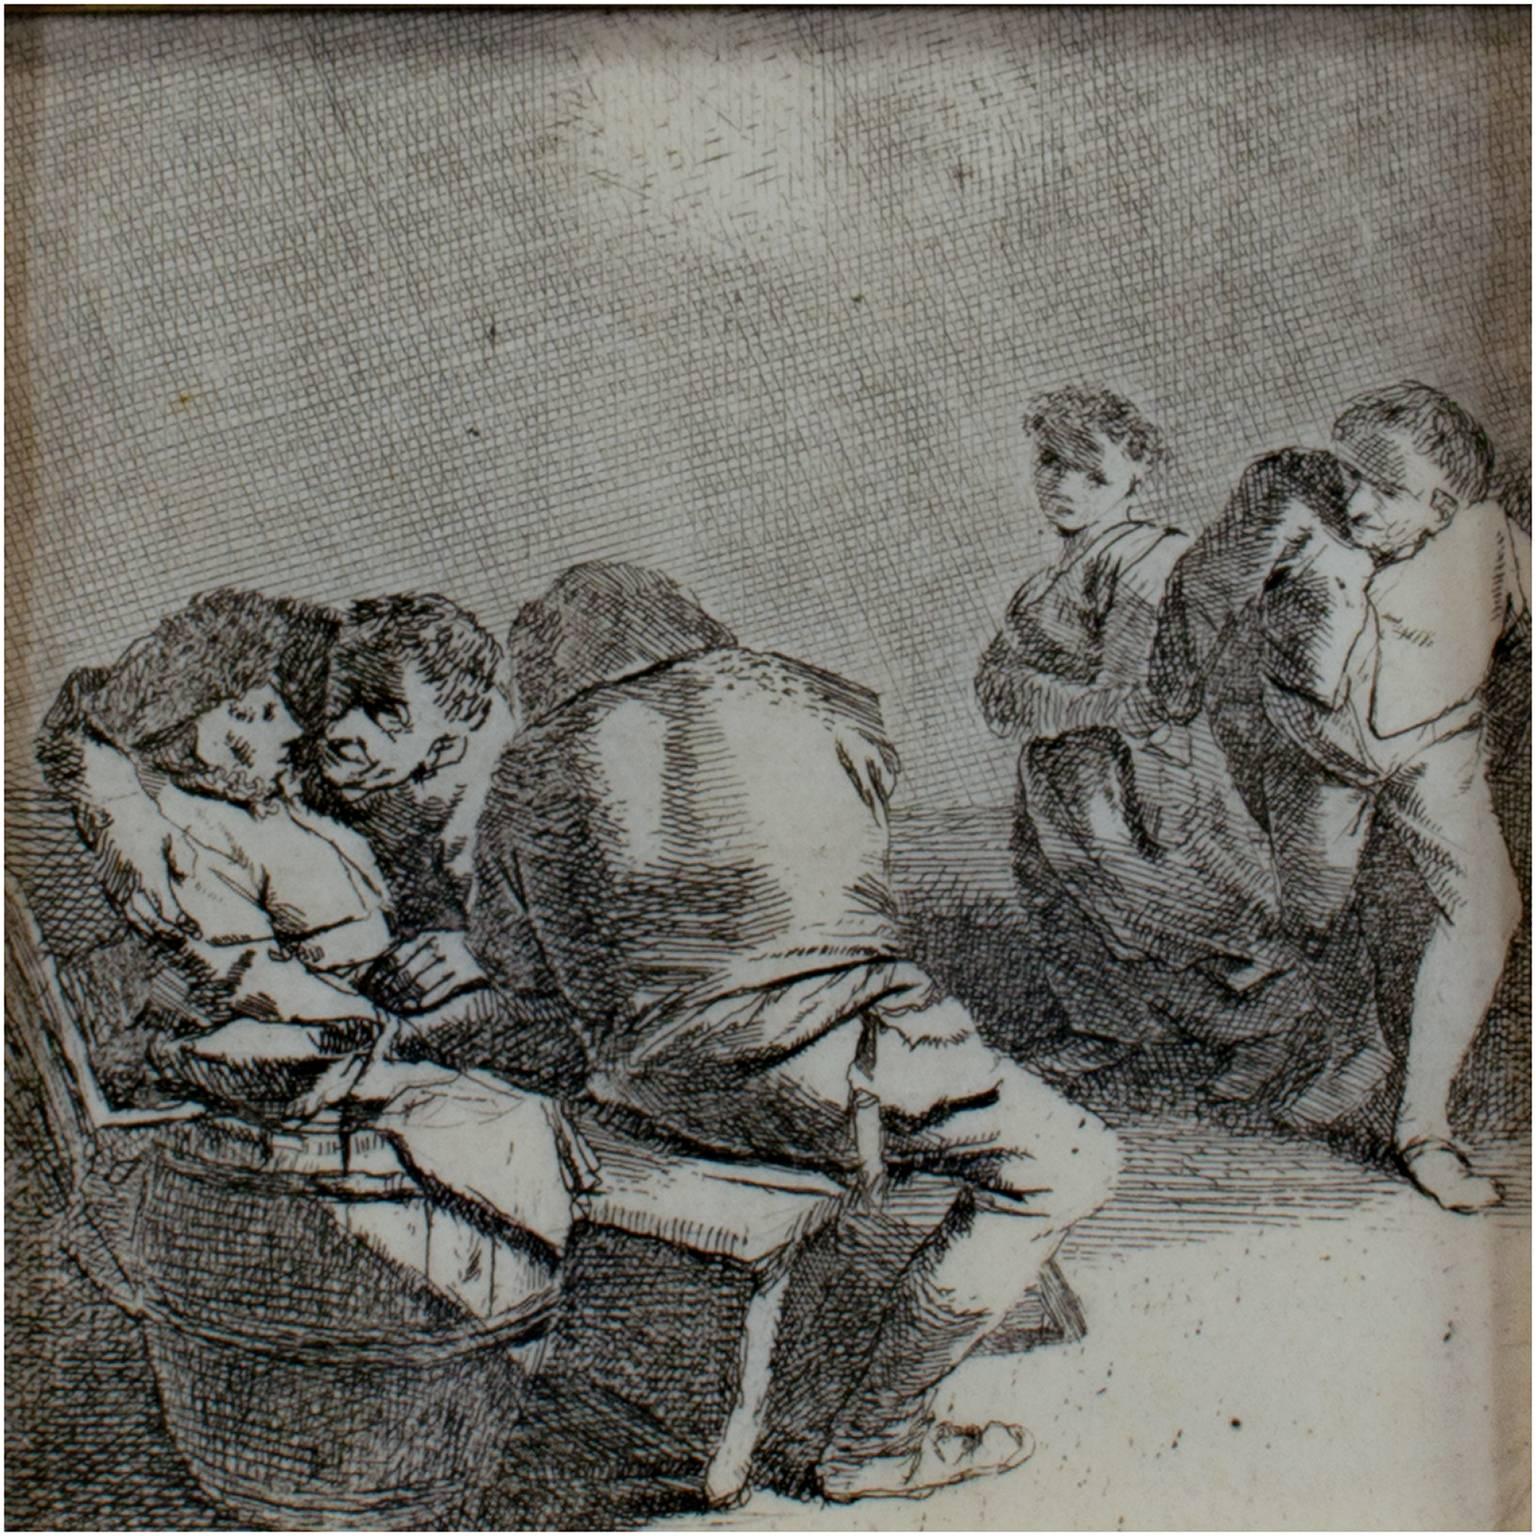 Figurative Print Cornelis Bega - « La rencontre », gravure originale de Cornelis-Pietersz Bega